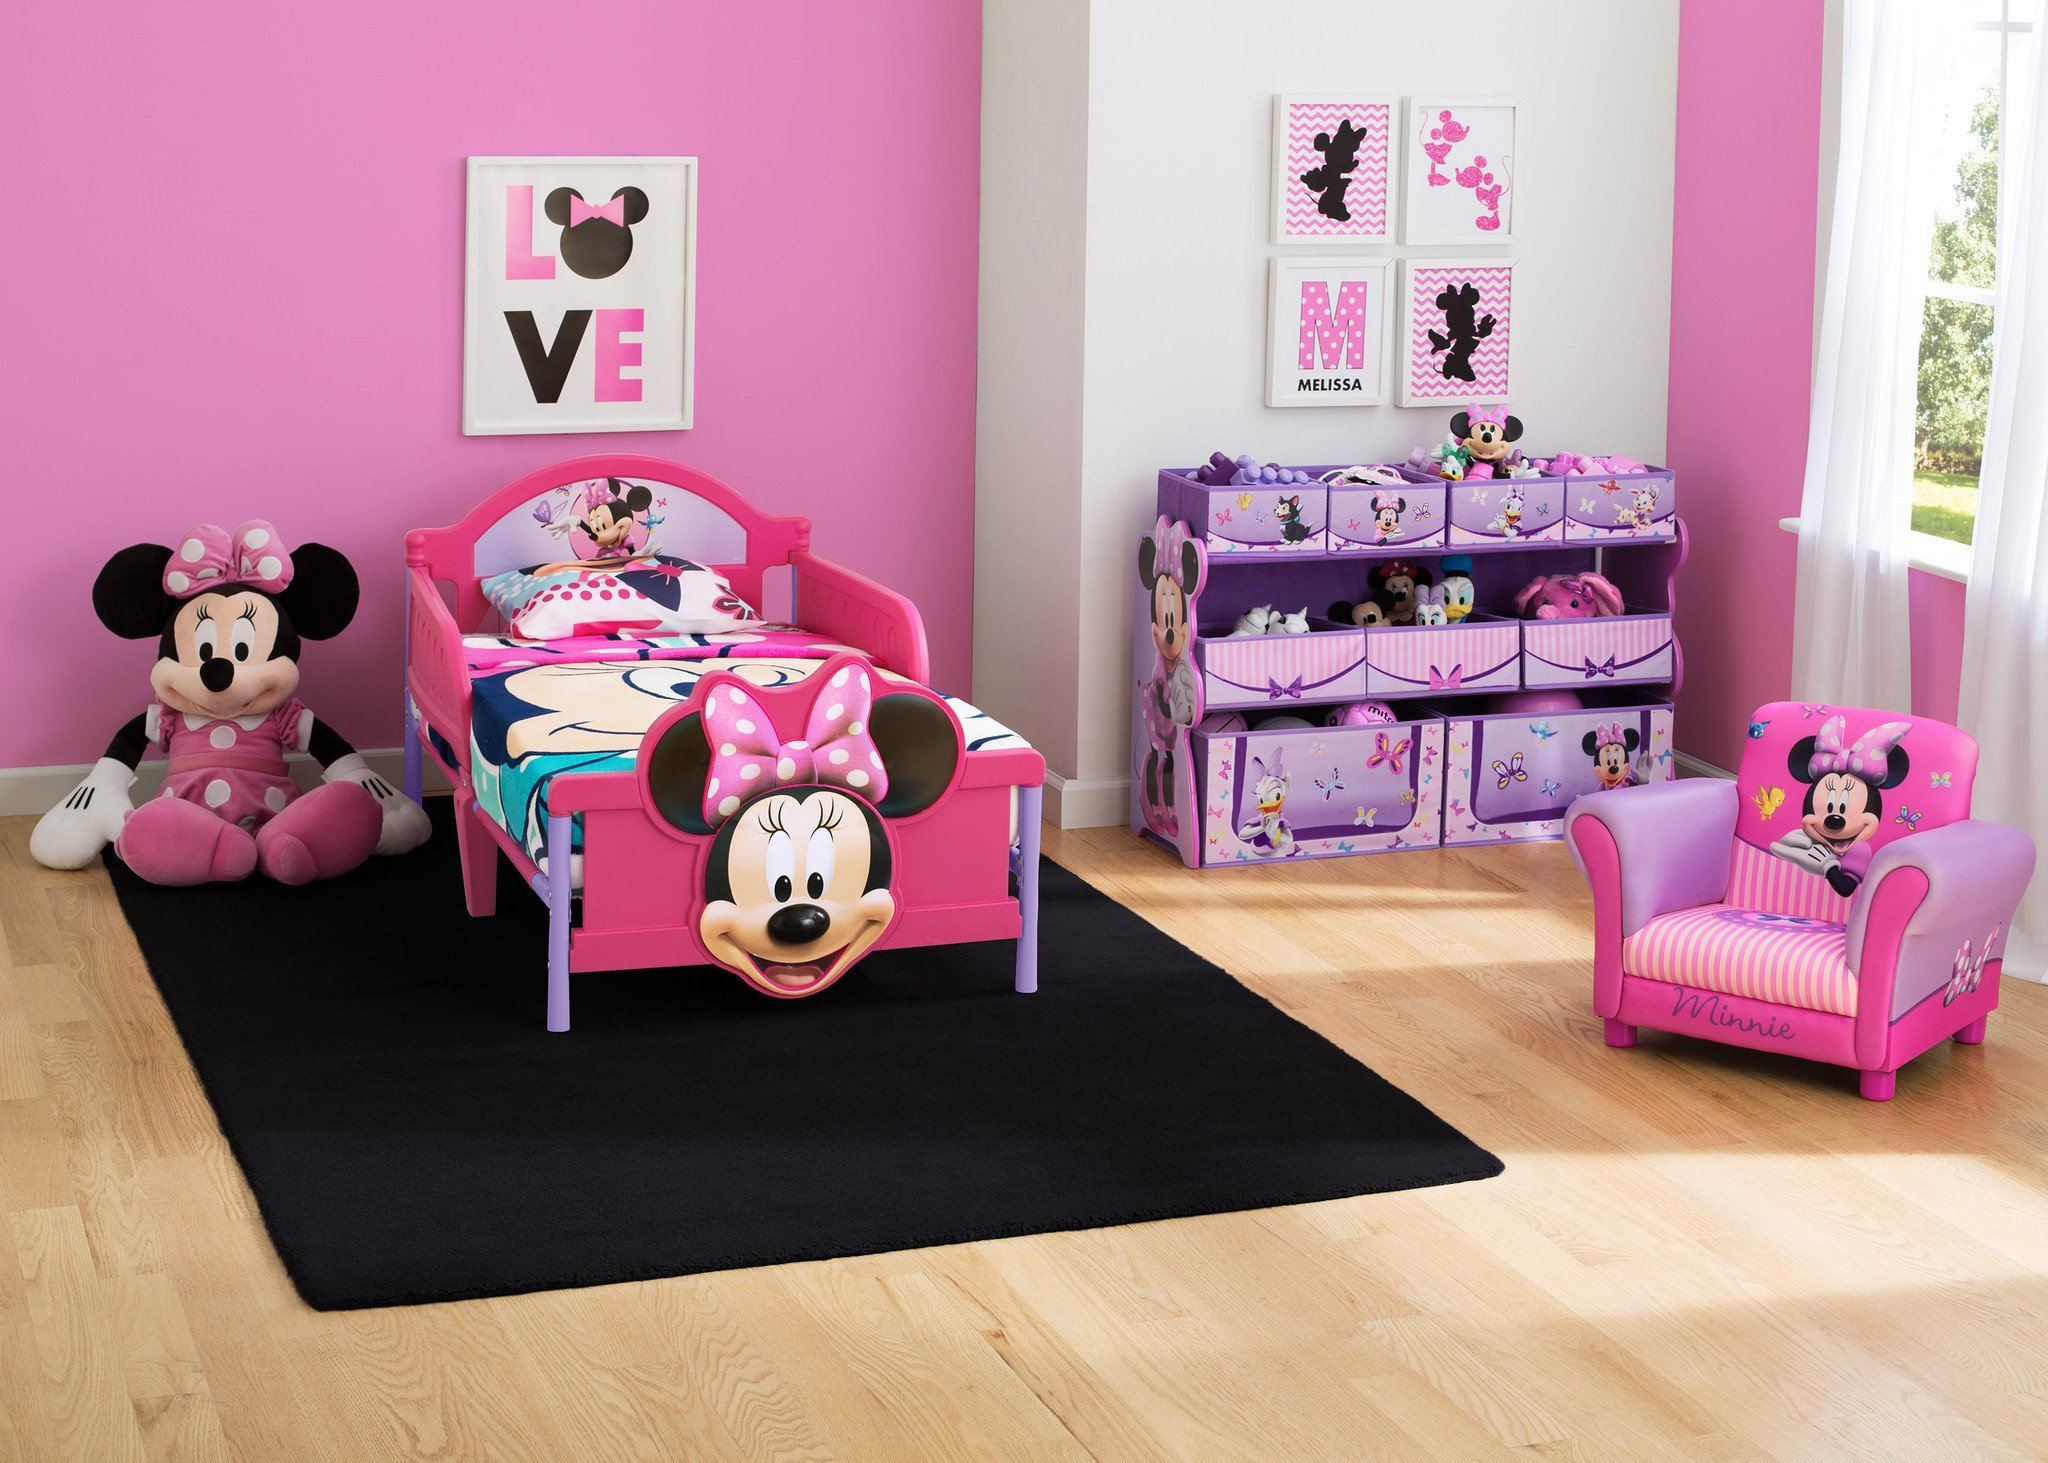 Furniture Nursery Baby Delta Children Plastic Toddler Bed Disney